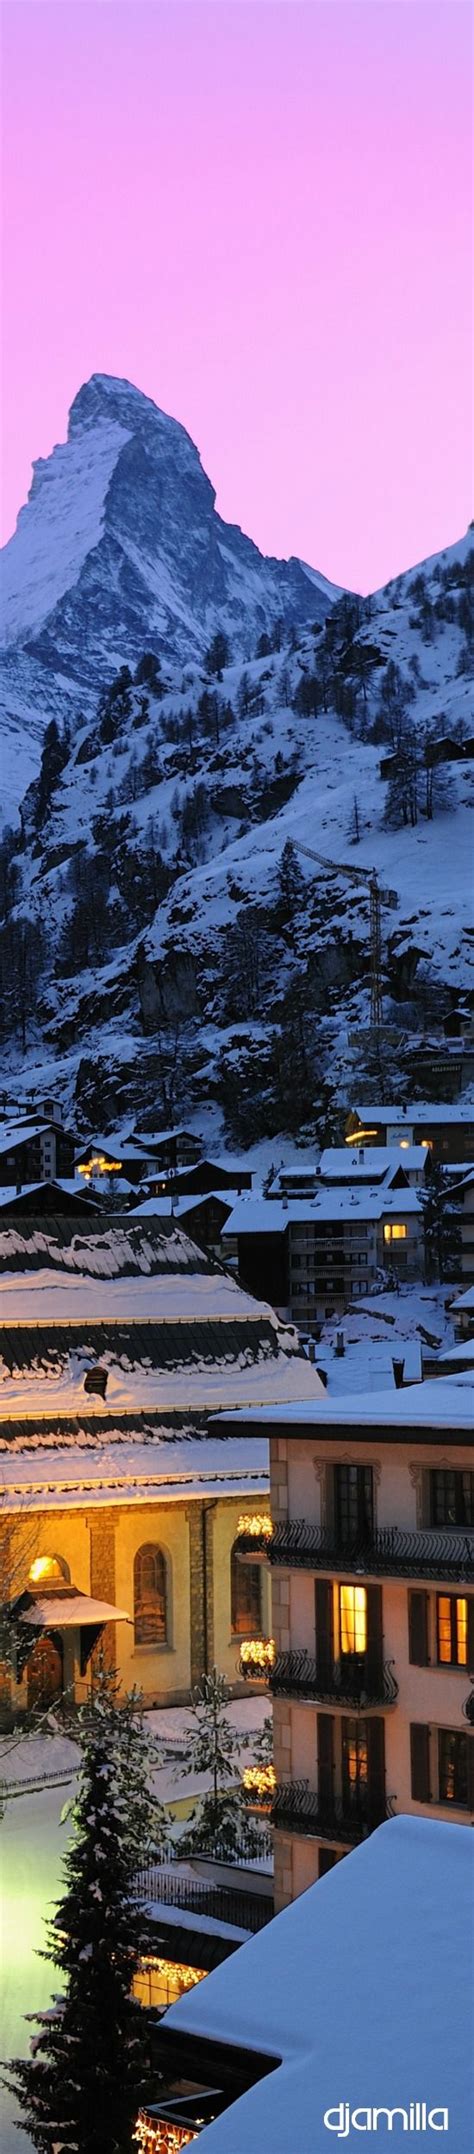 Zermatt Switzerland Winter Evening Romantic Village Ambiance With